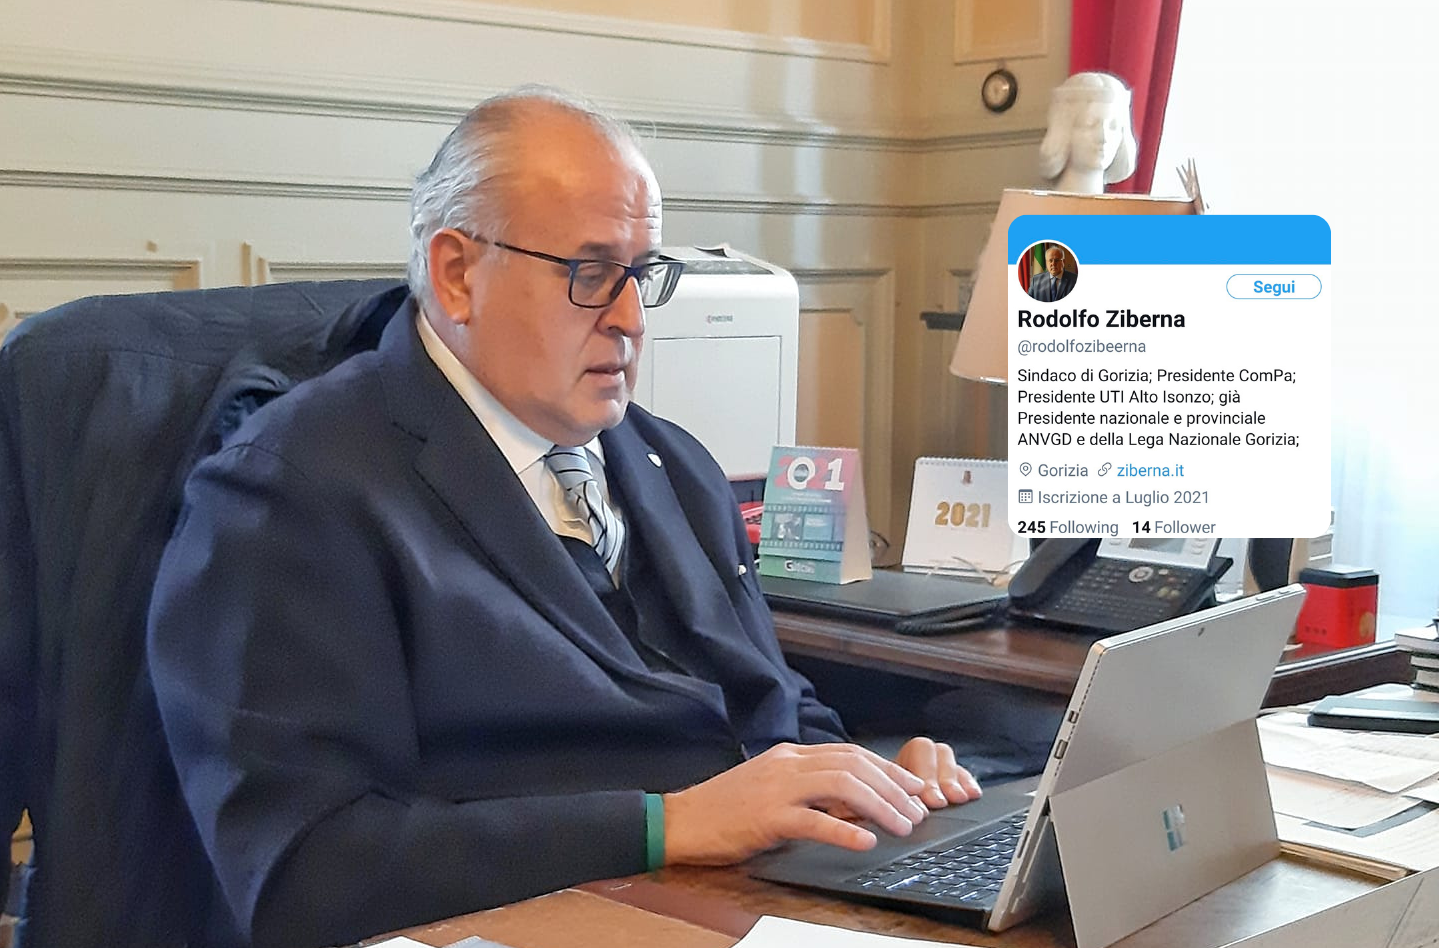 Hacker clona il profilo social del sindaco di Gorizia, chiedeva soldi e numeri